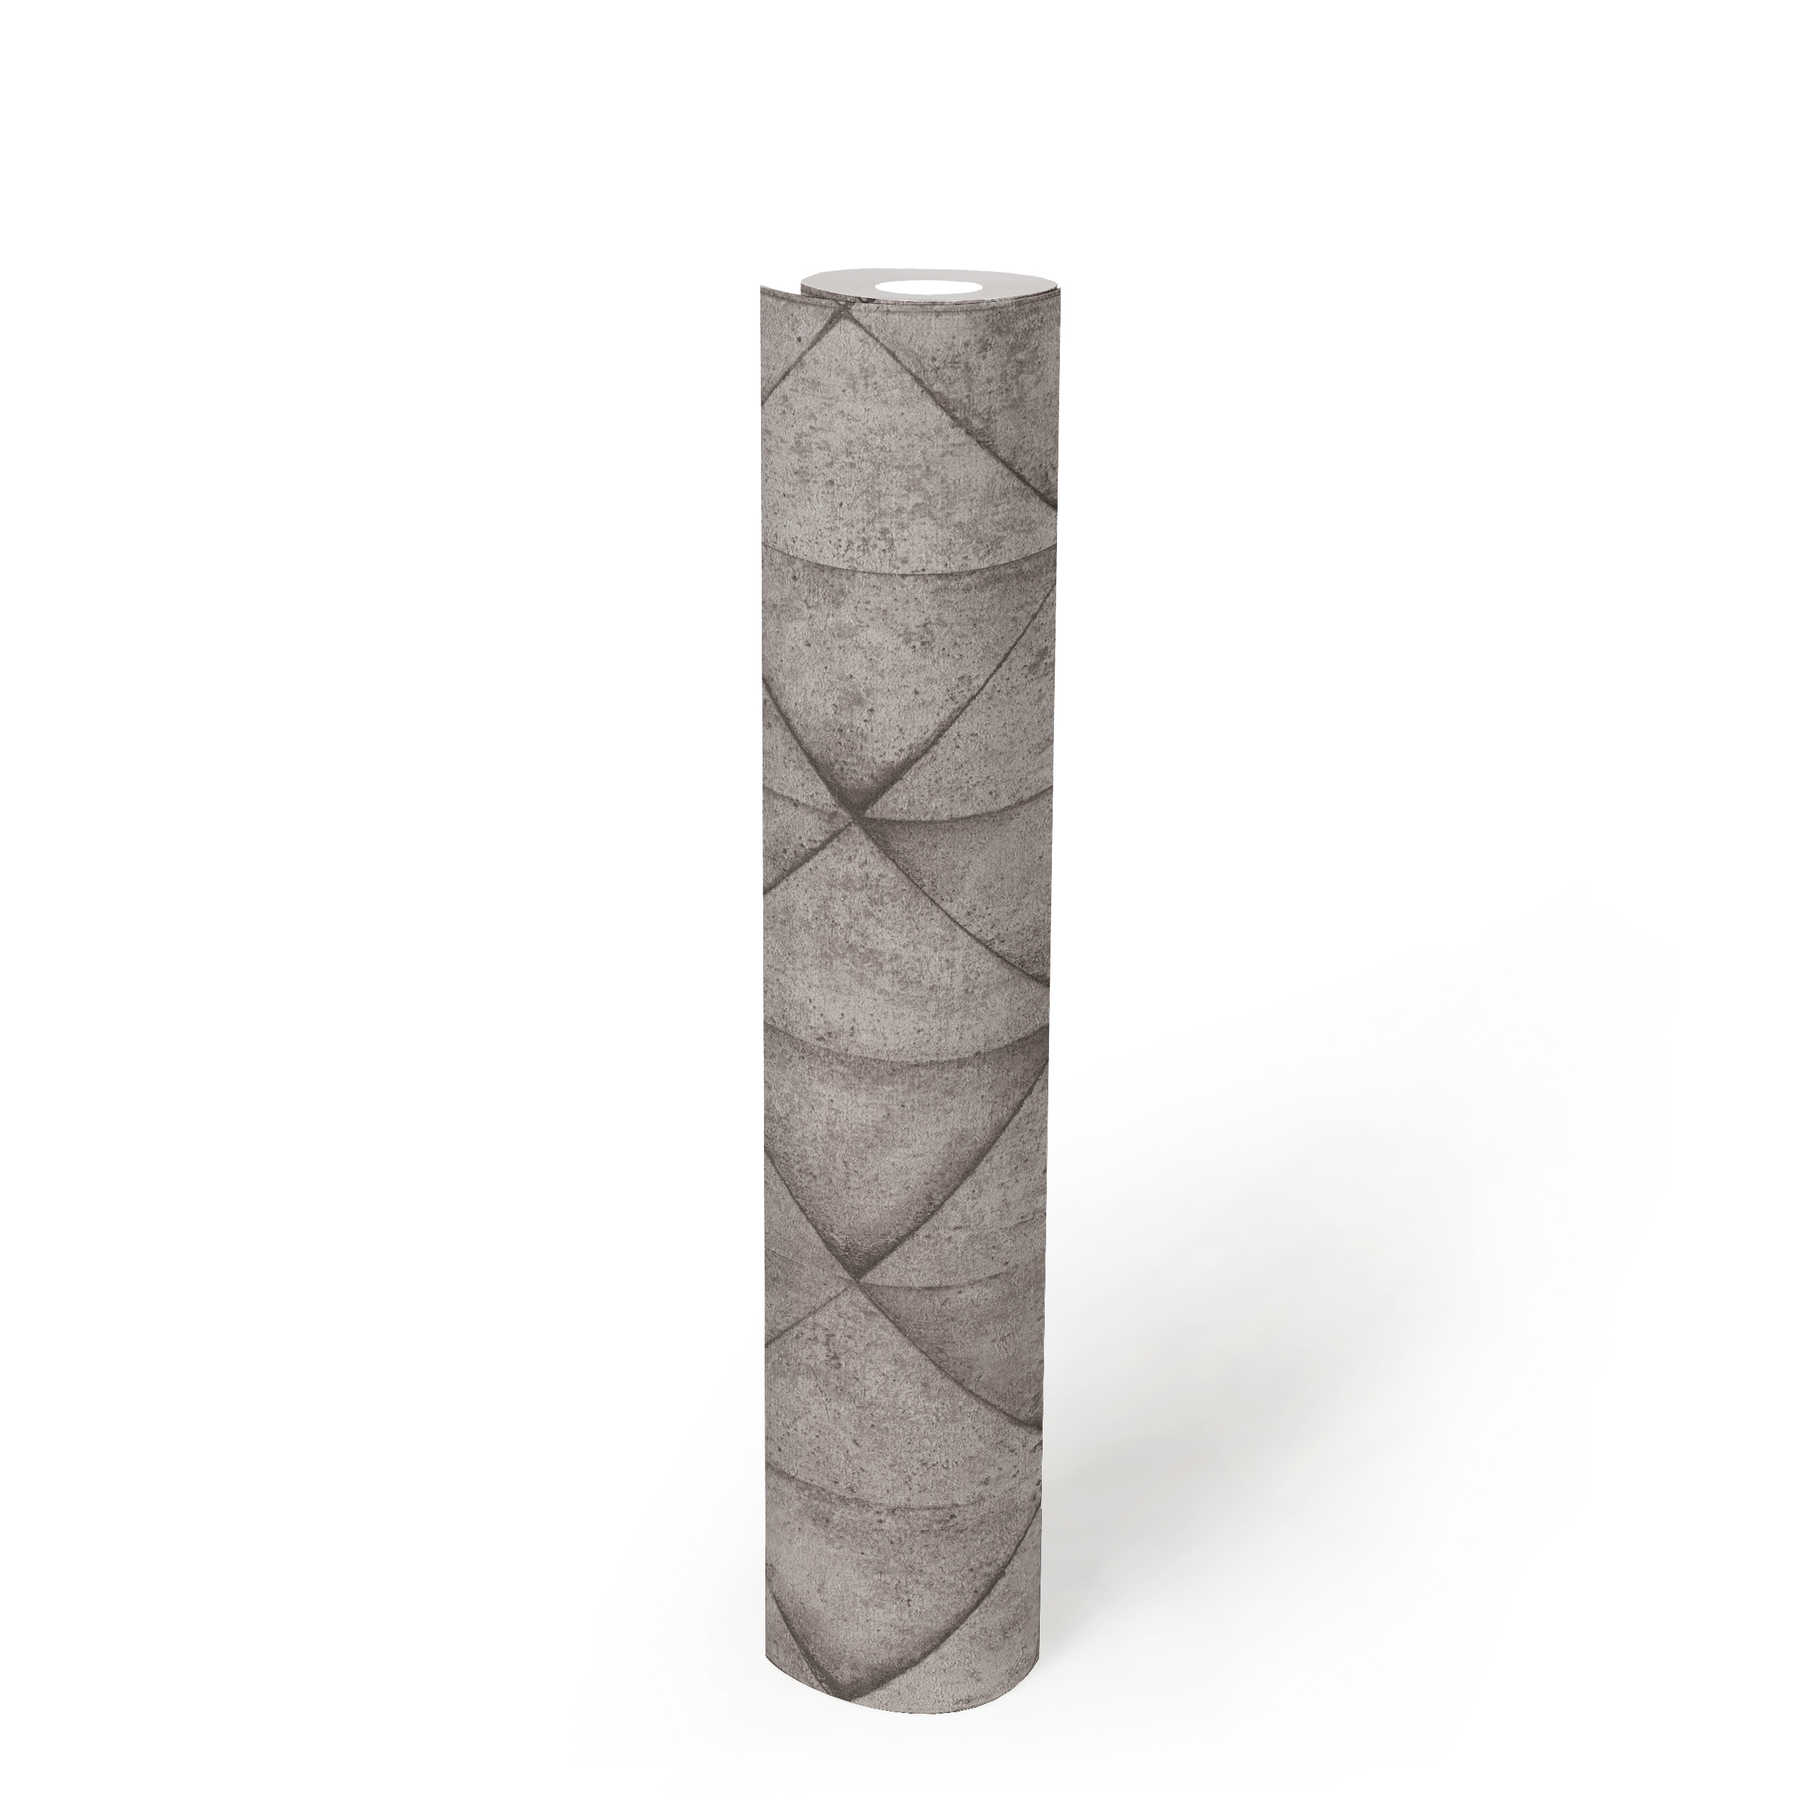             Behang met betontegels & 3D-effect - grijs, antraciet
        